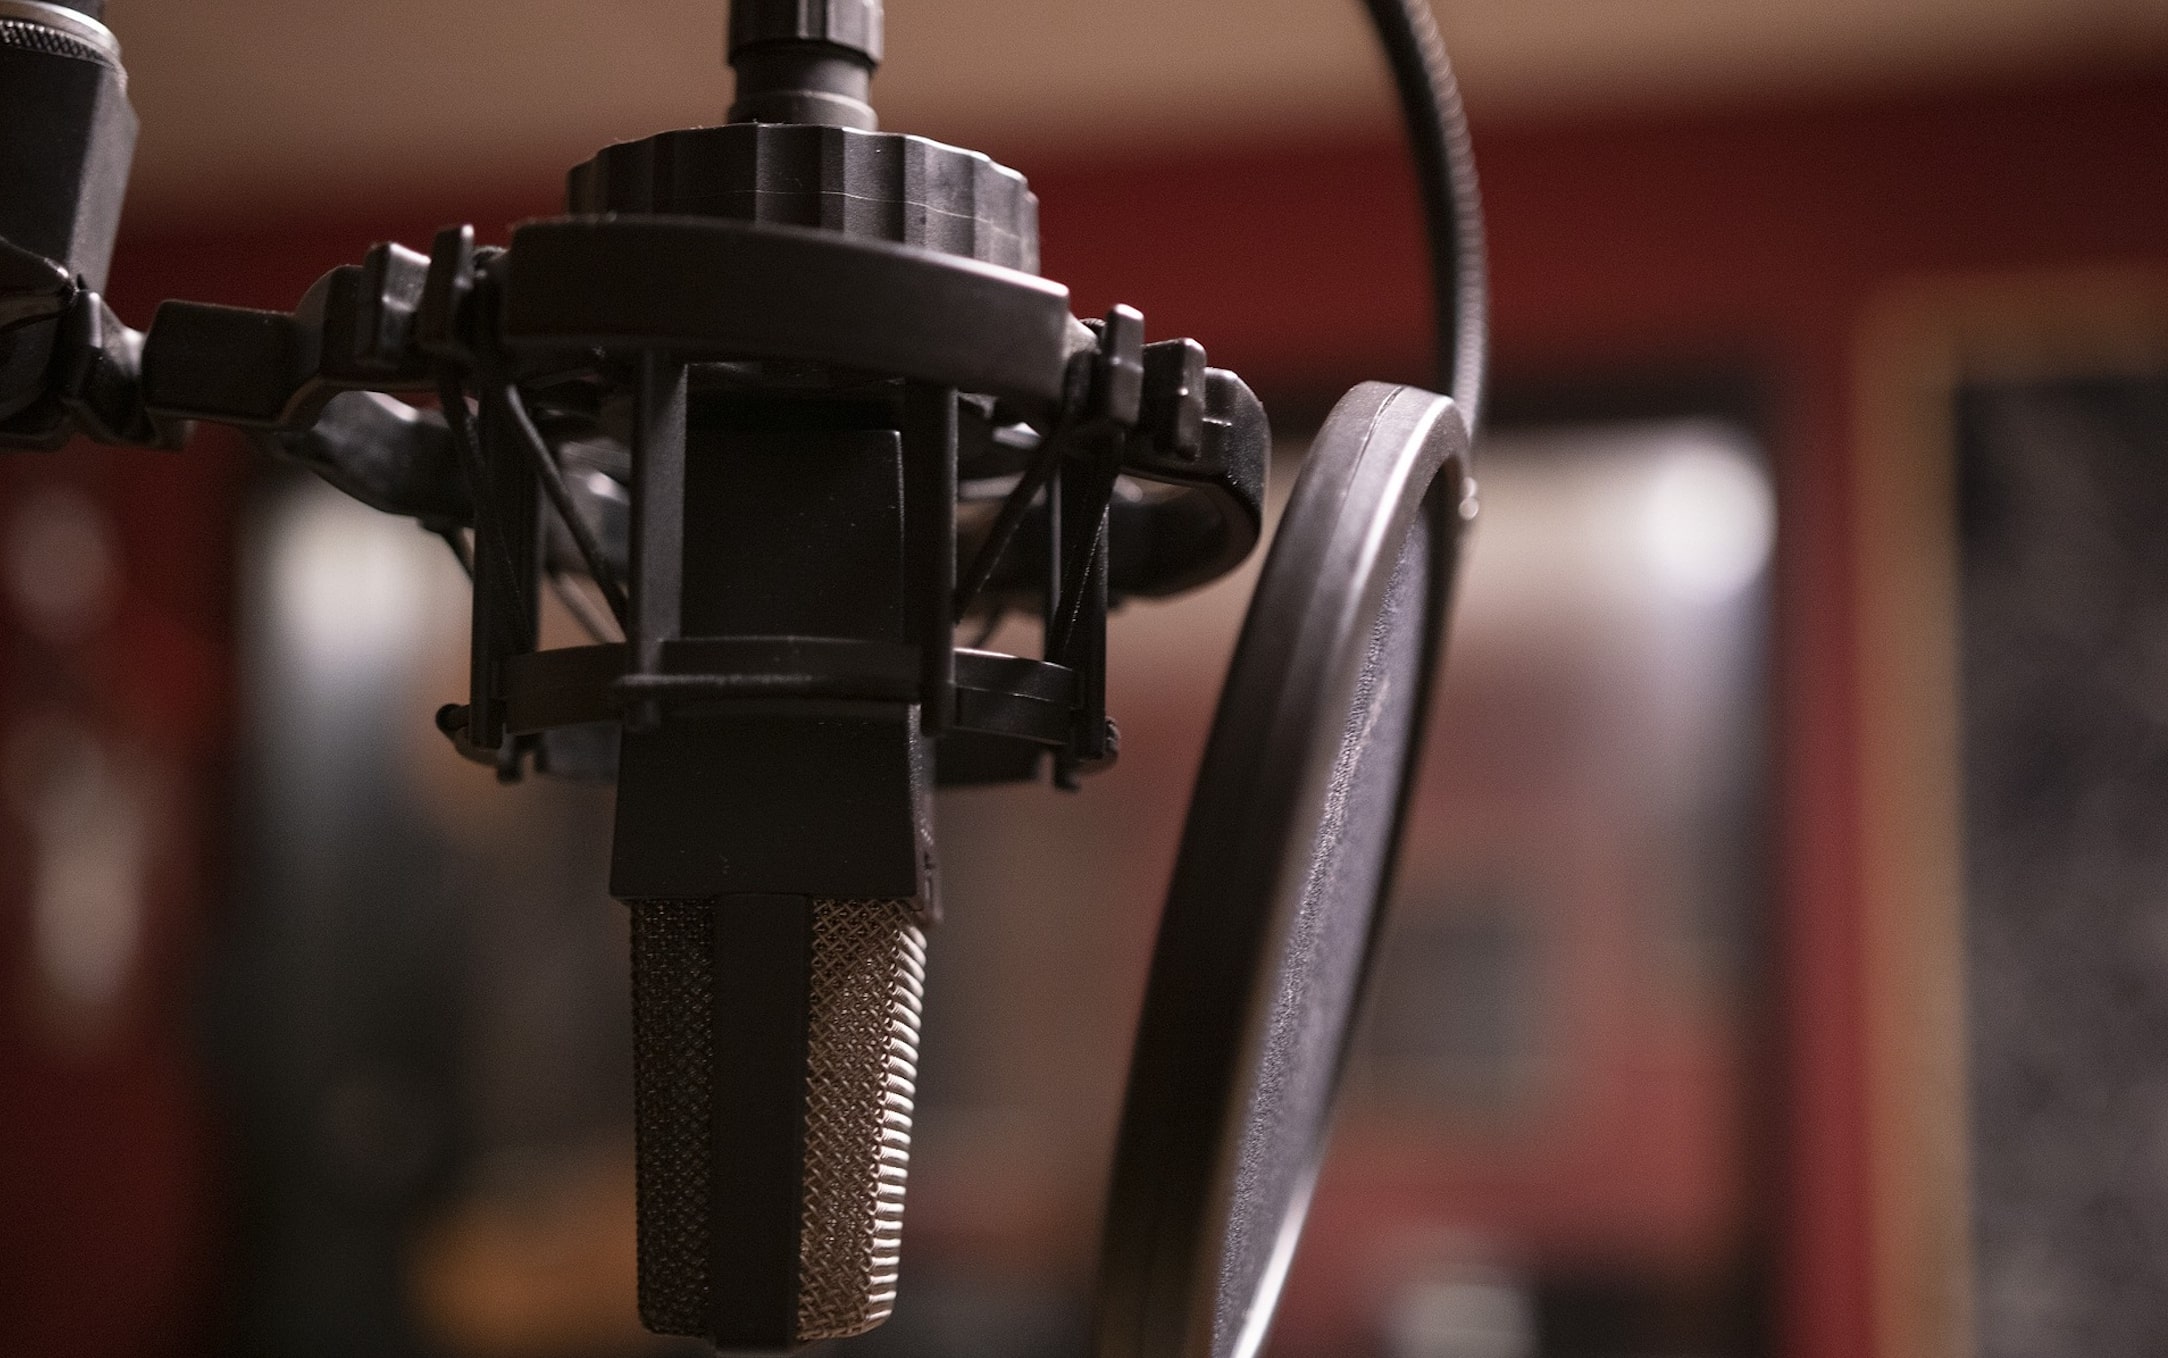 Micro Microphone Podcast De - Image gratuite sur Pixabay - Pixabay